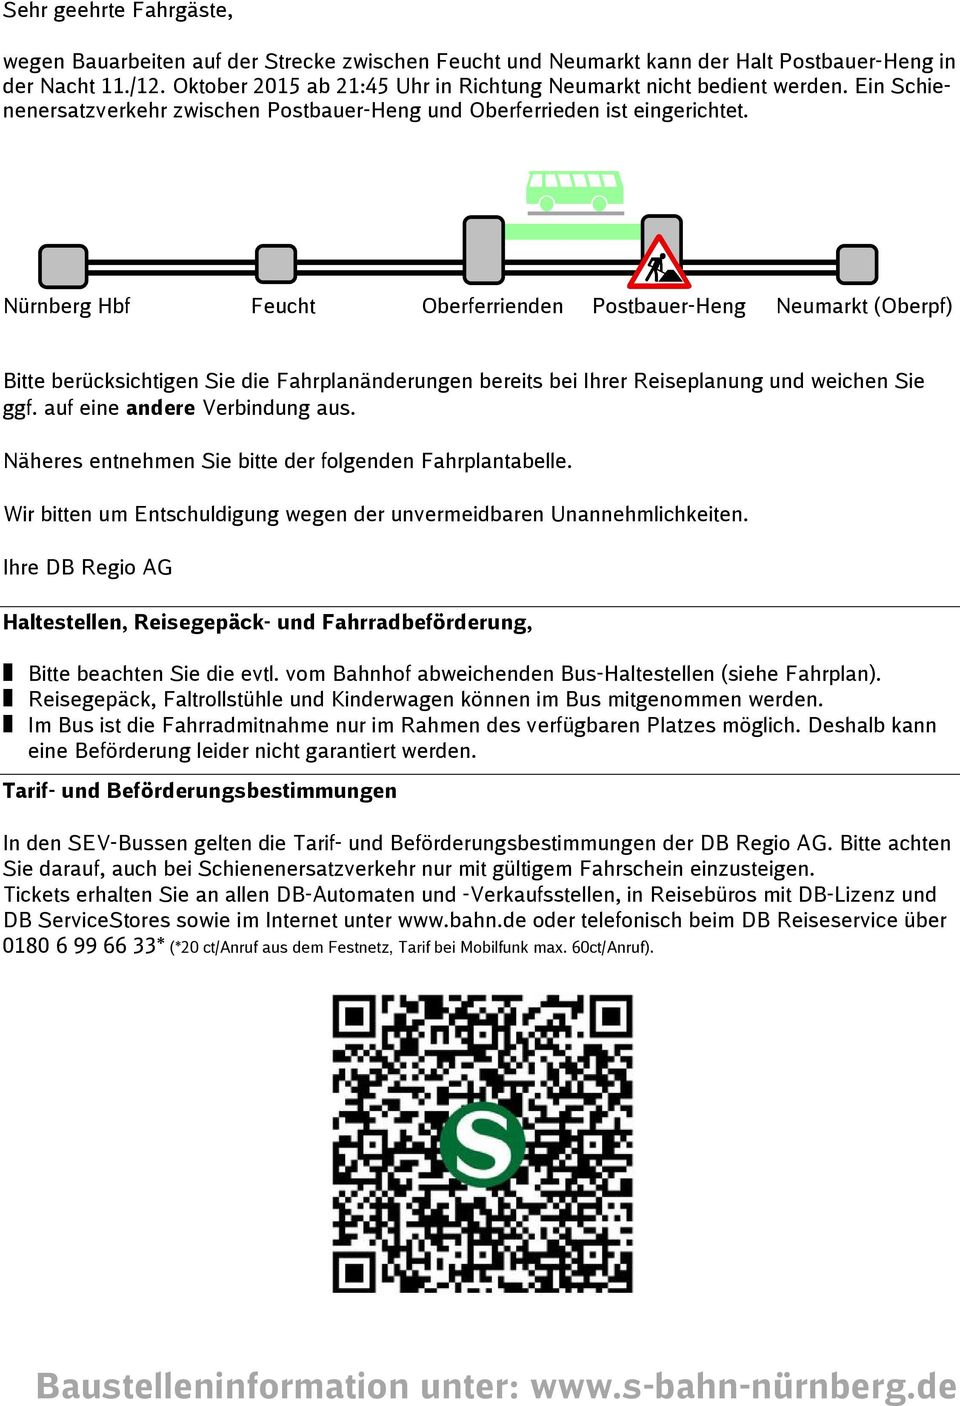 Nürnberg Hbf Feucht Oberferrienden Postbauer-Heng Neumarkt (Oberpf) Bitte berücksichtigen Sie die Fahrplanänderungen bereits bei Ihrer Reiseplanung und weichen Sie ggf. auf eine andere Verbindung aus.